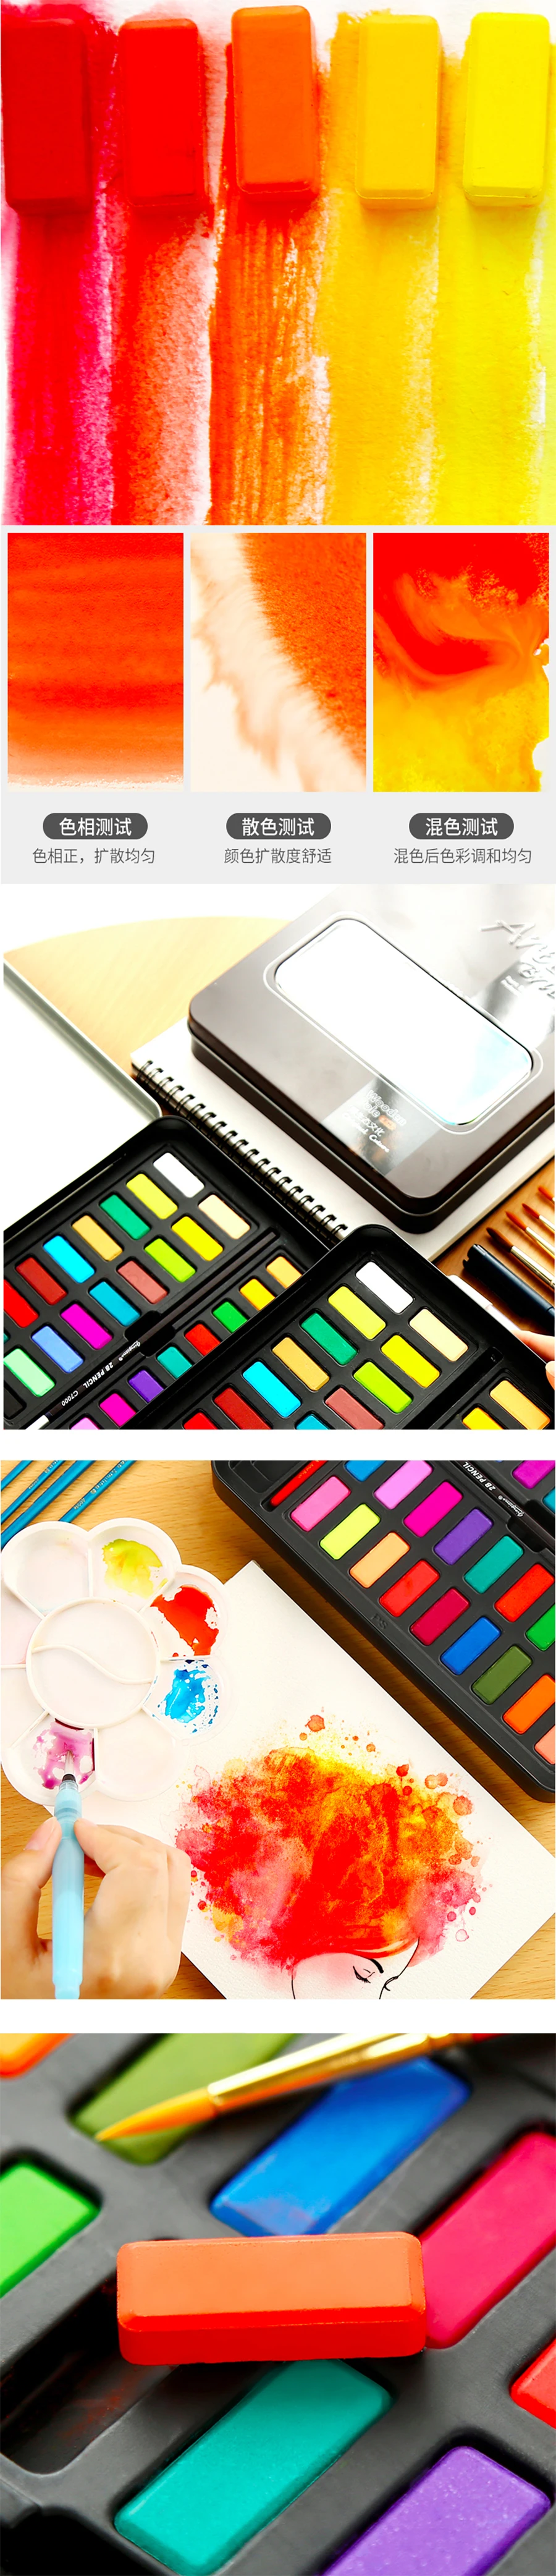 36 цветов акварель краски Professional одноцветное набор в металлическая Оловянная коробка для художников и начинающих хобби